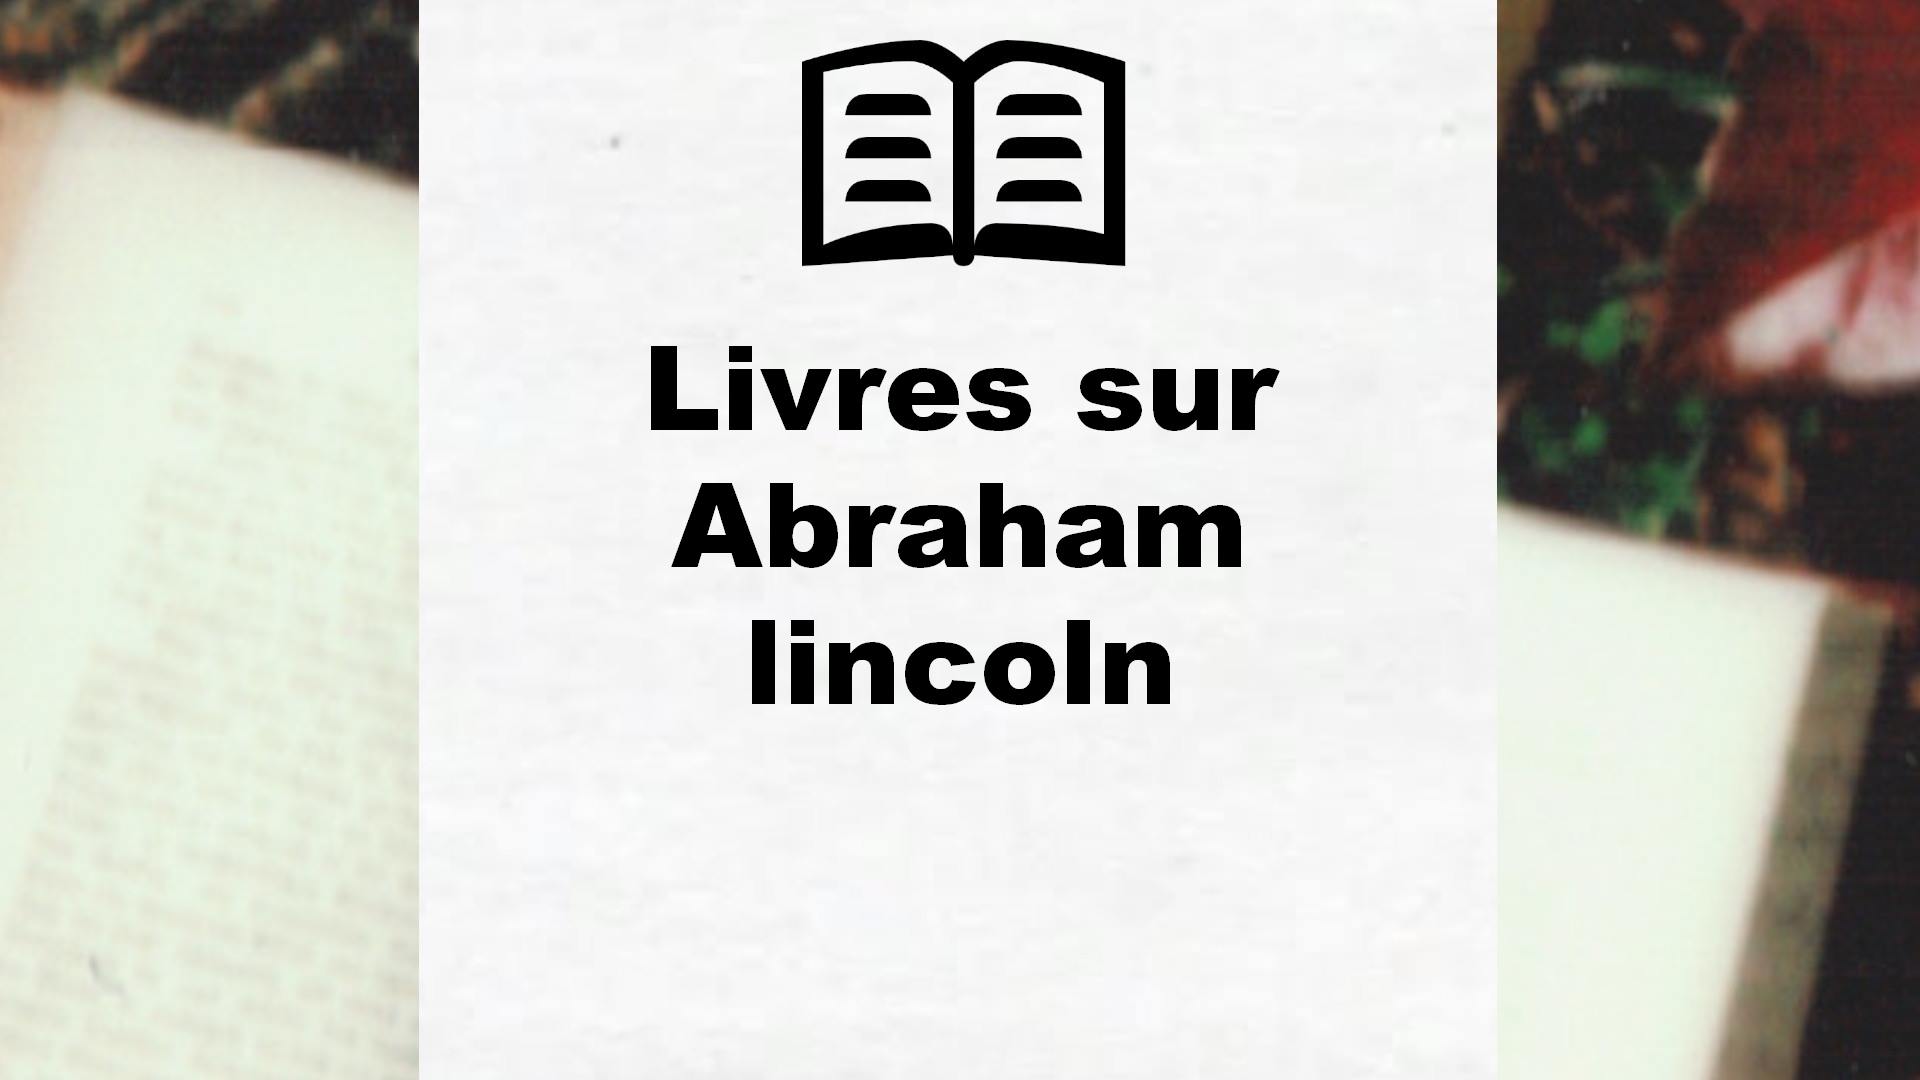 Livres sur Abraham lincoln